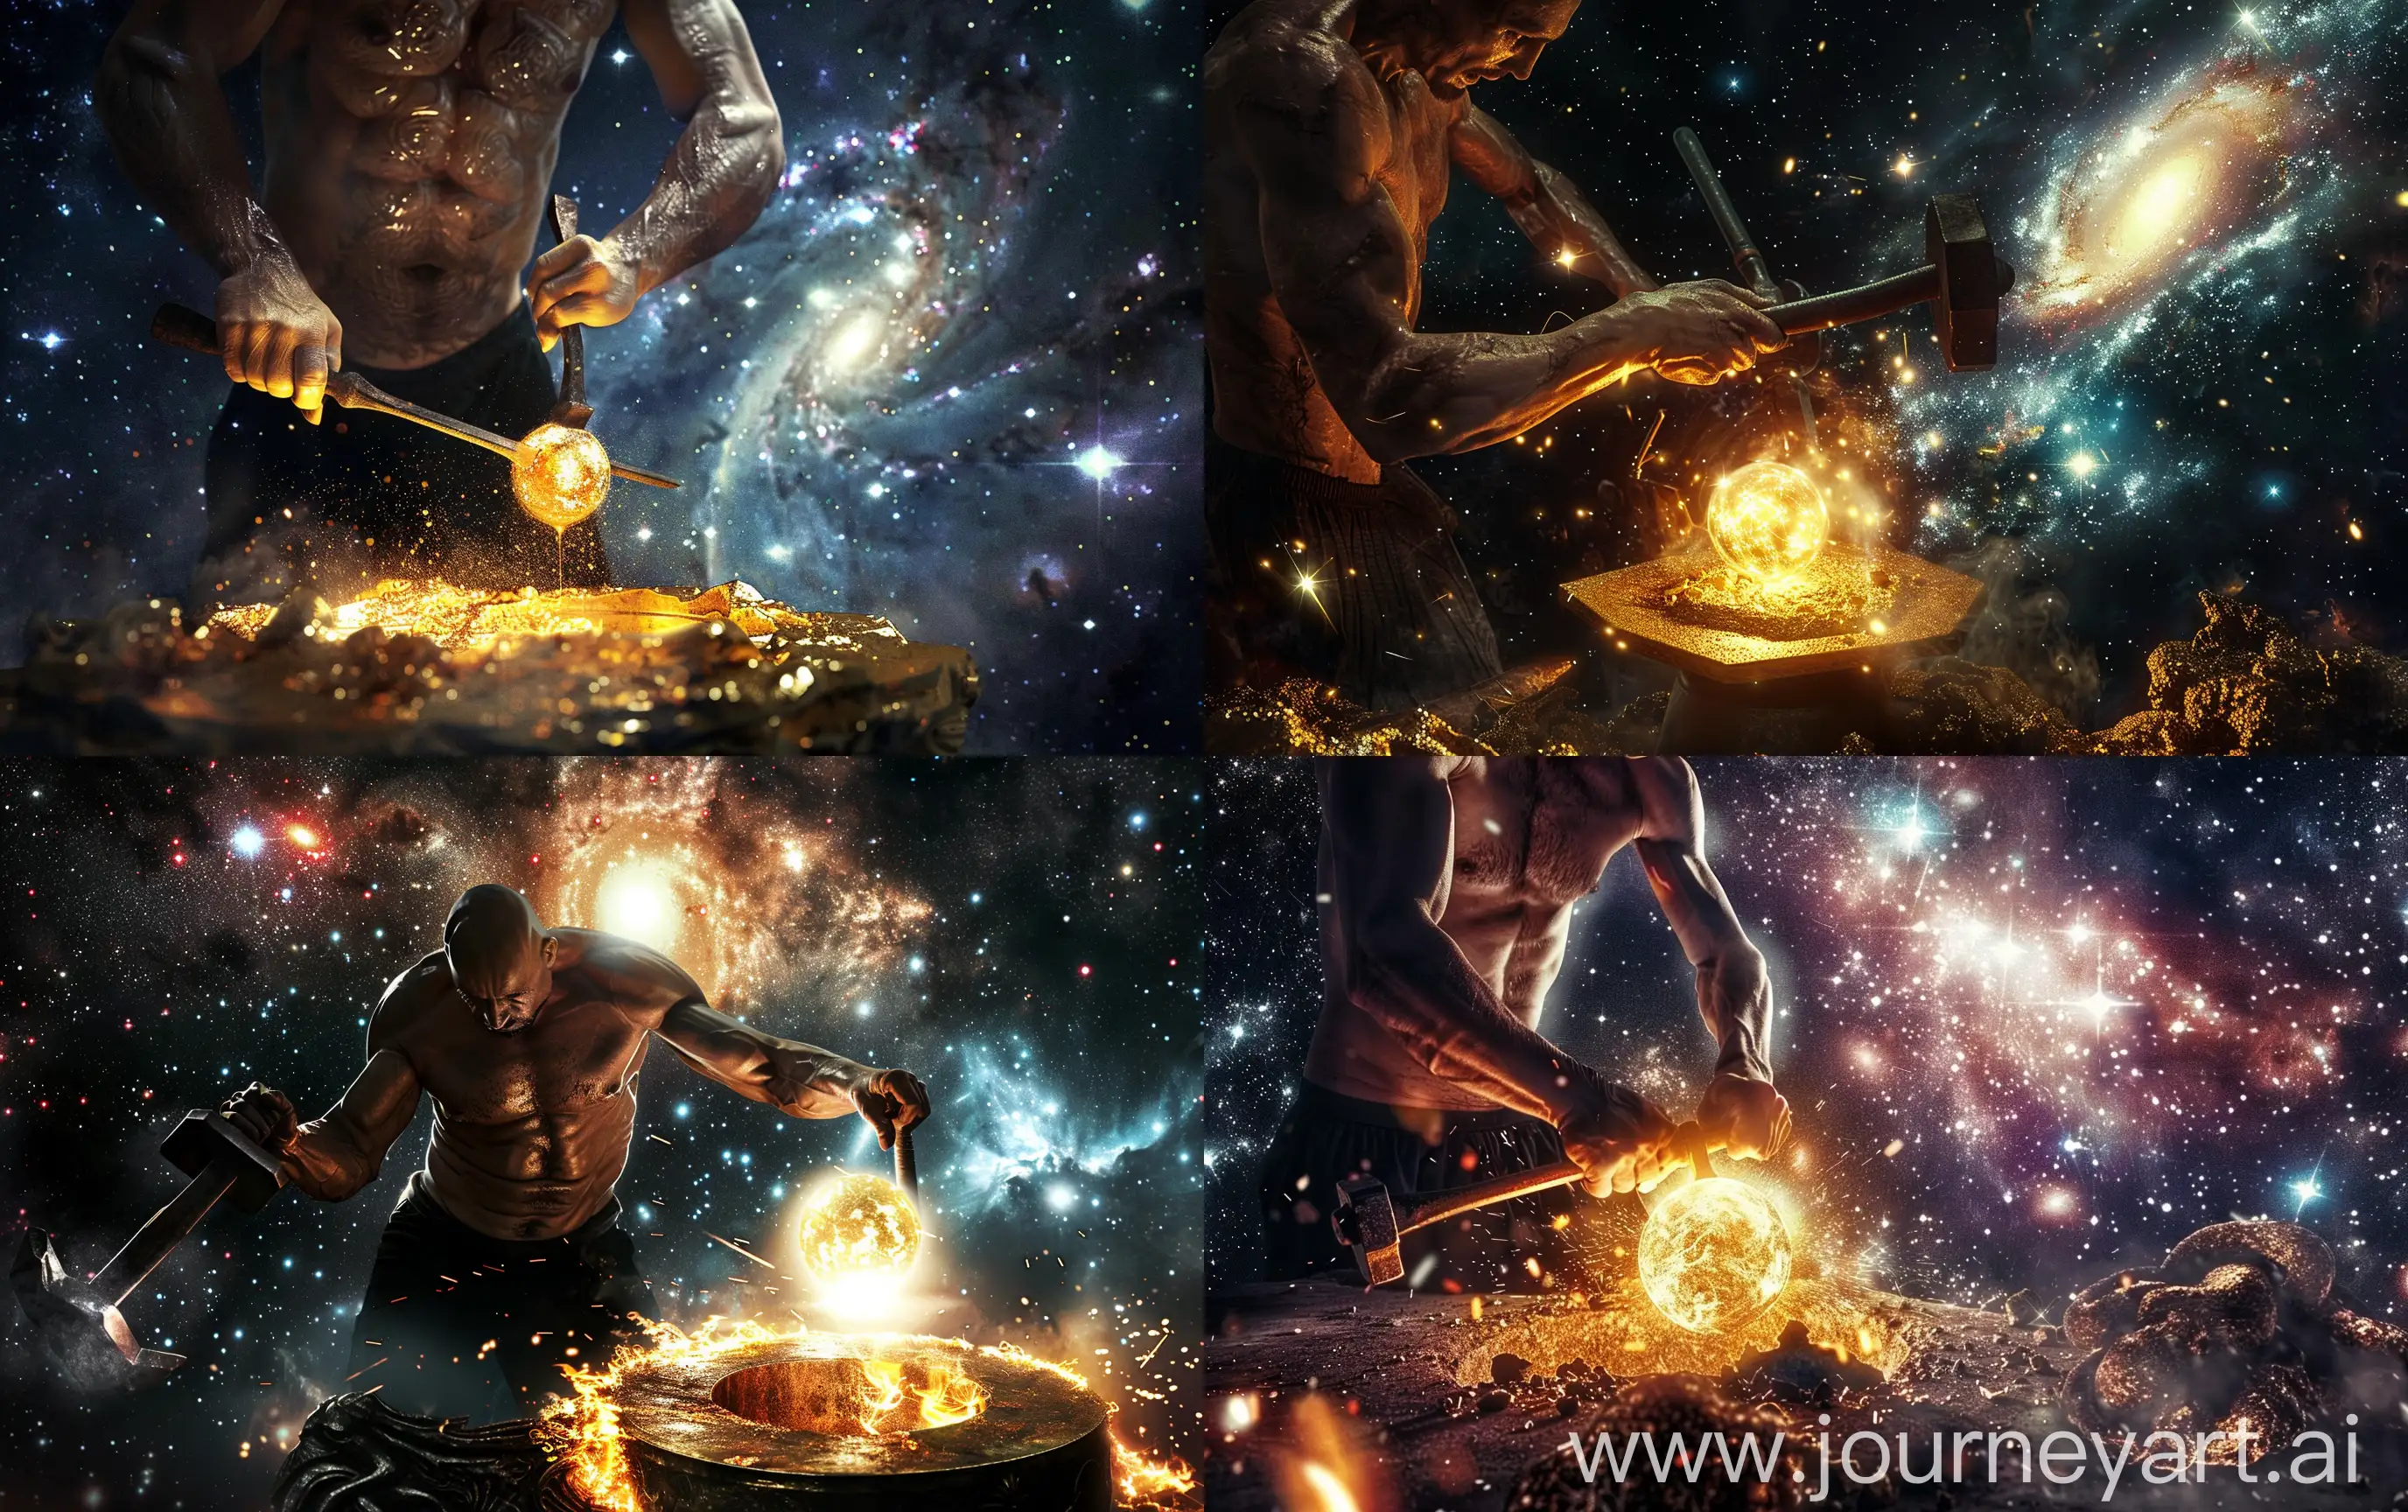 Galactic-Blacksmith-Forges-Celestial-Nebula-Sphere